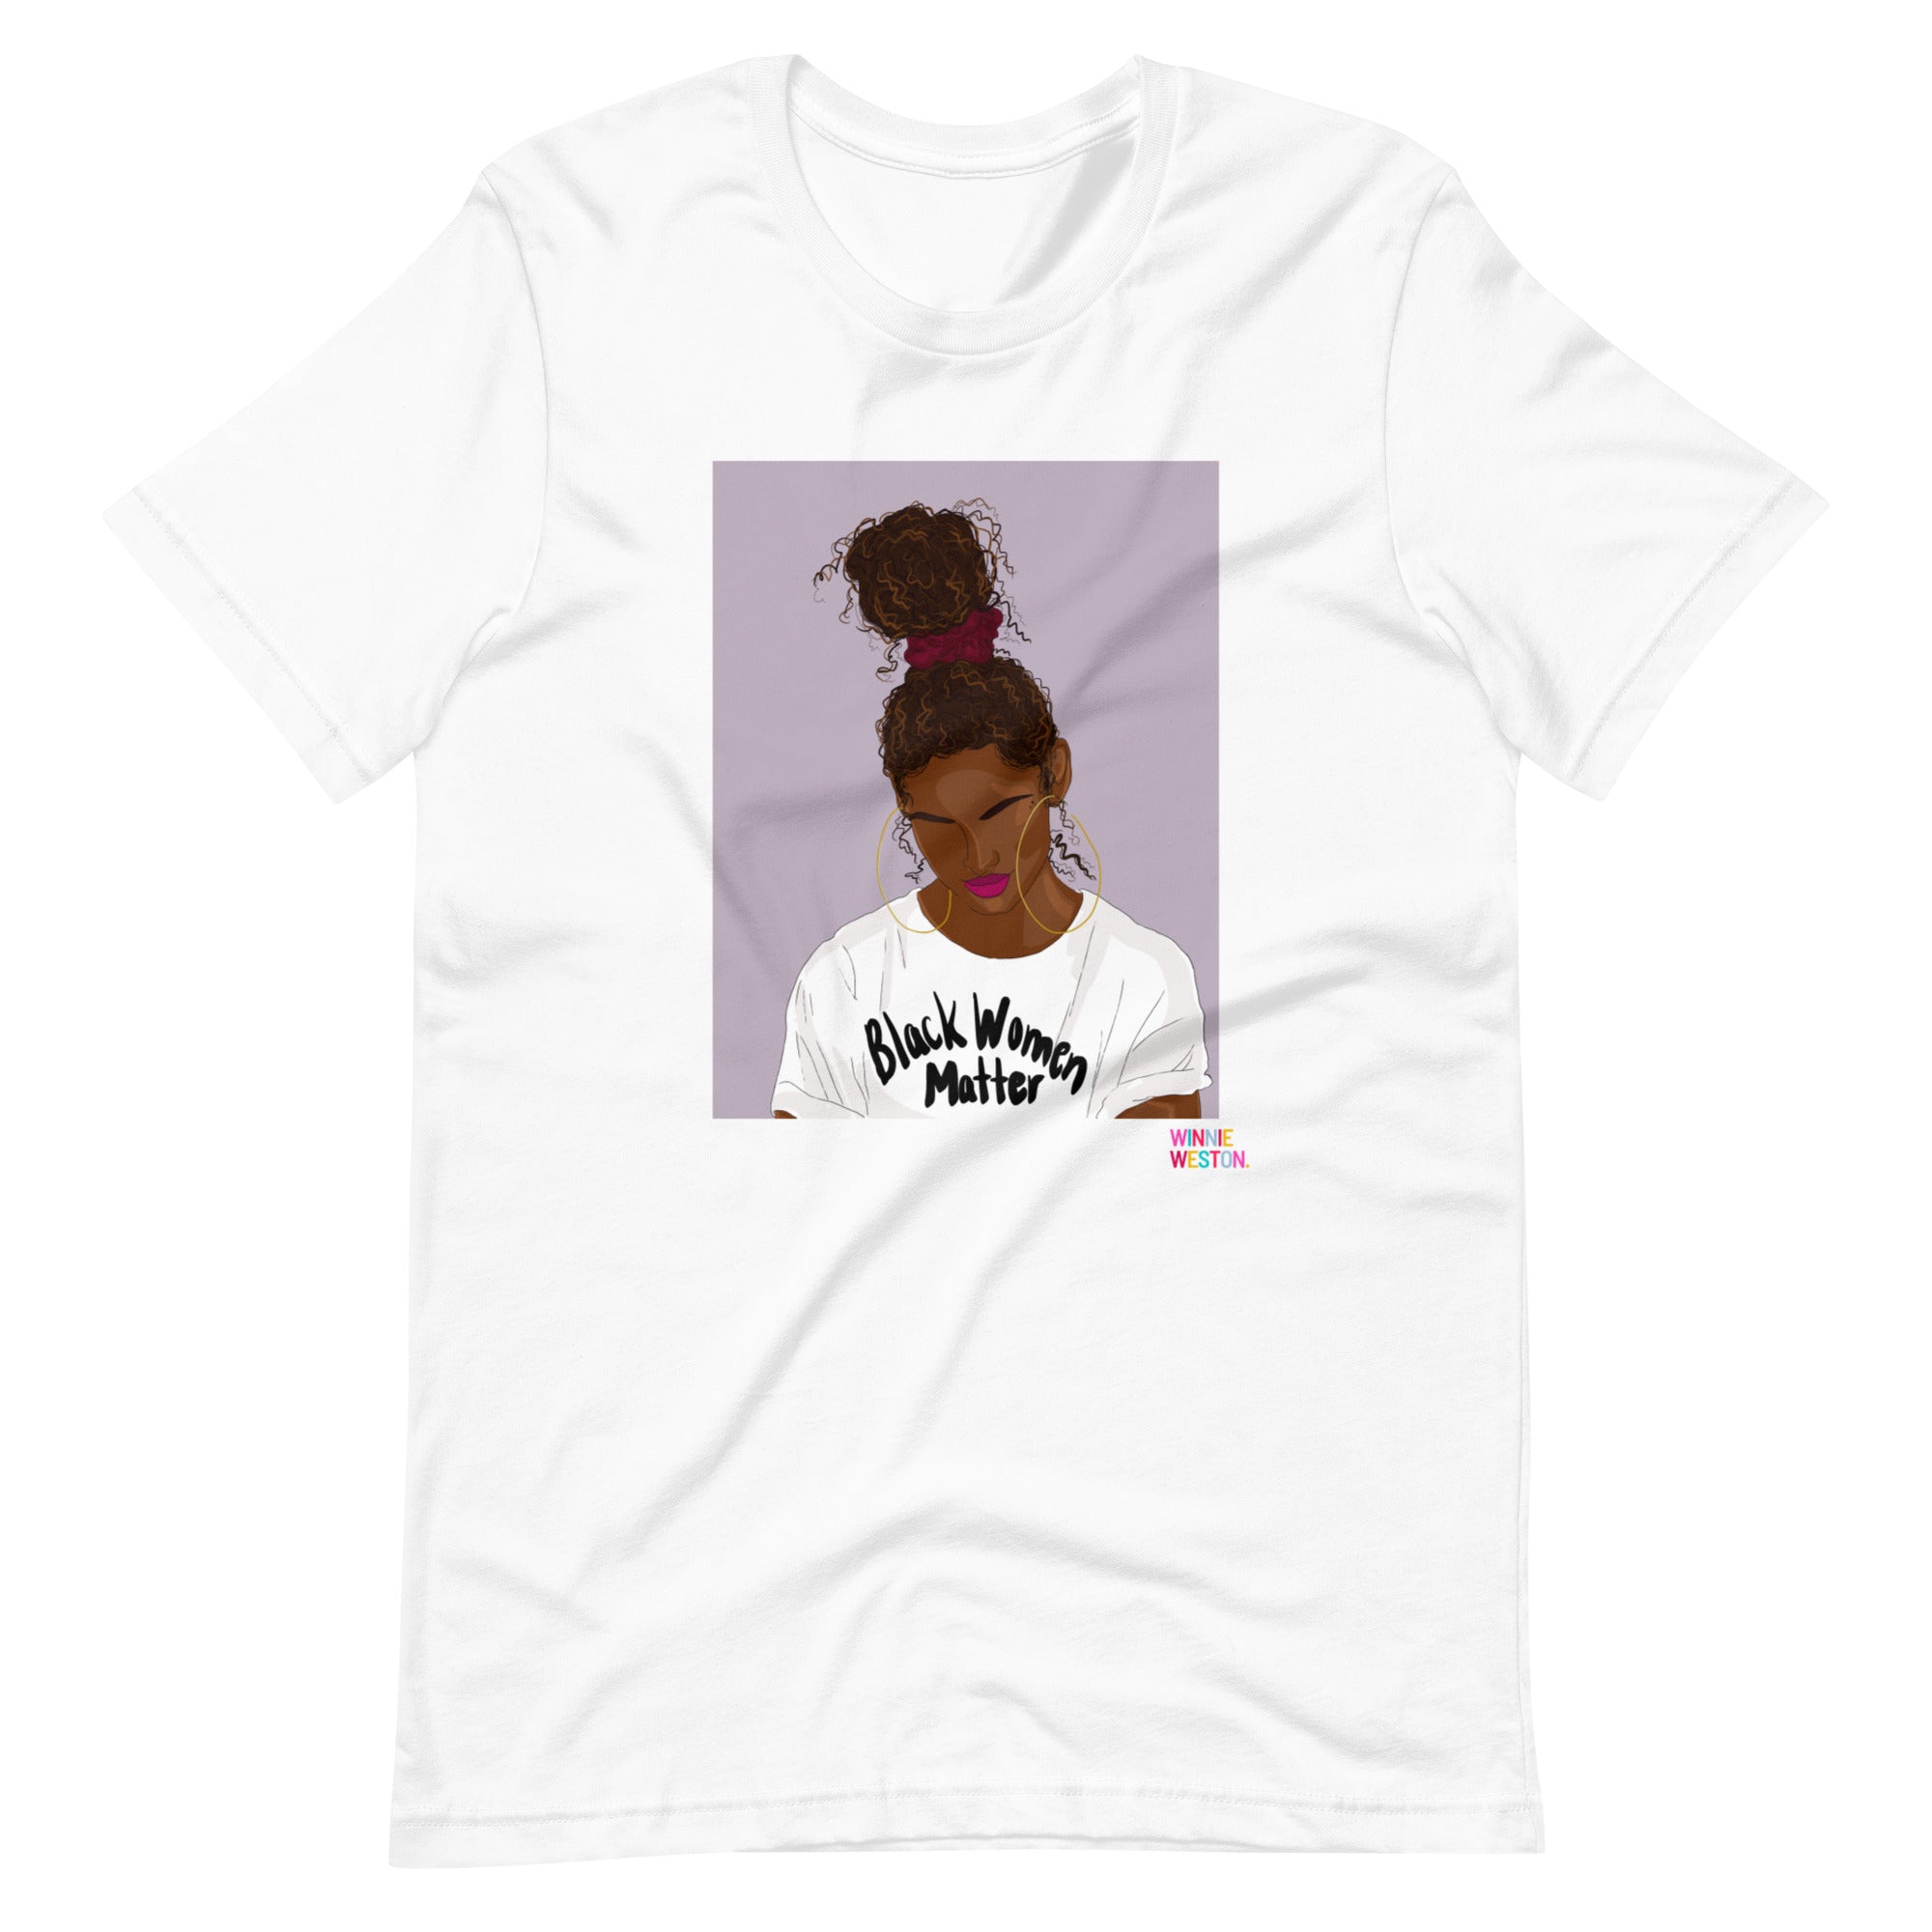 Black Women Matter T-Shirt